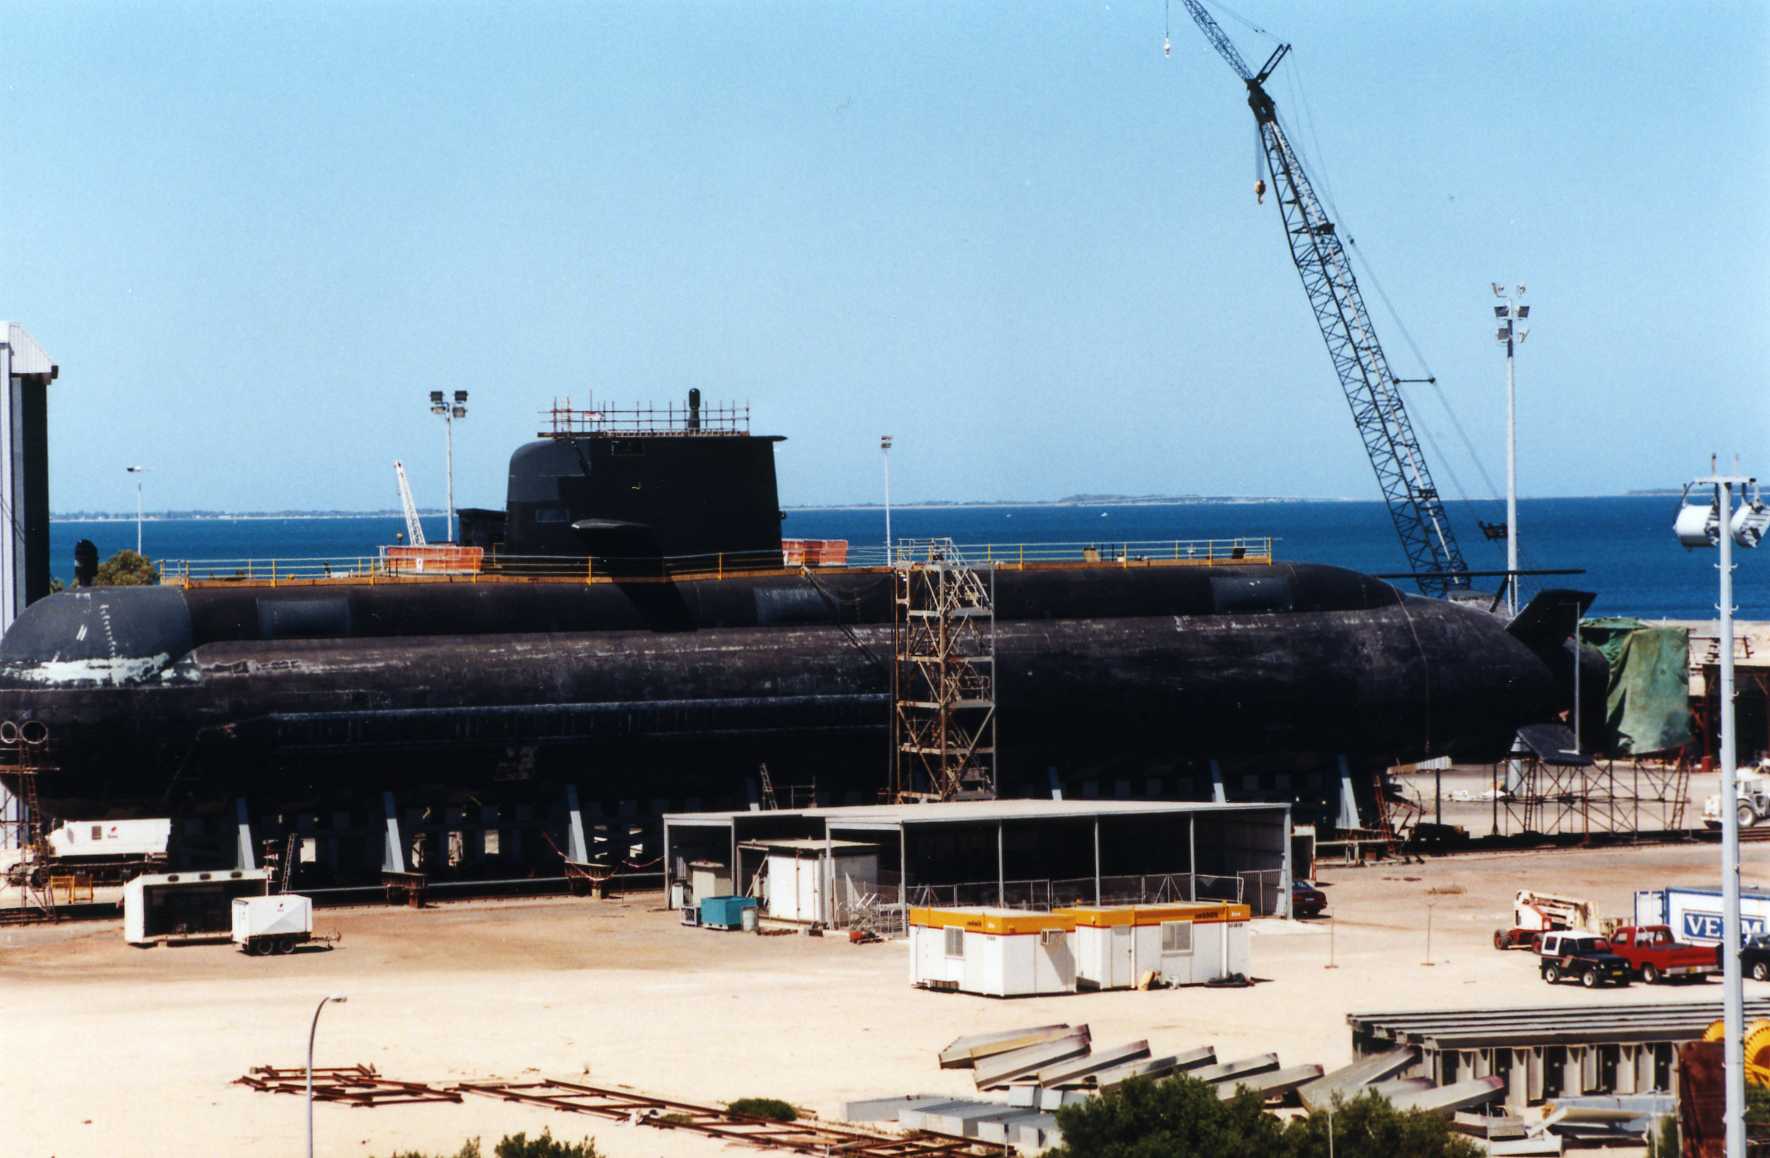 111  Октябрь, 10, 1999 лодку из воды. Подводной лодки класса Collins на стапеле в Kwinana.jpg